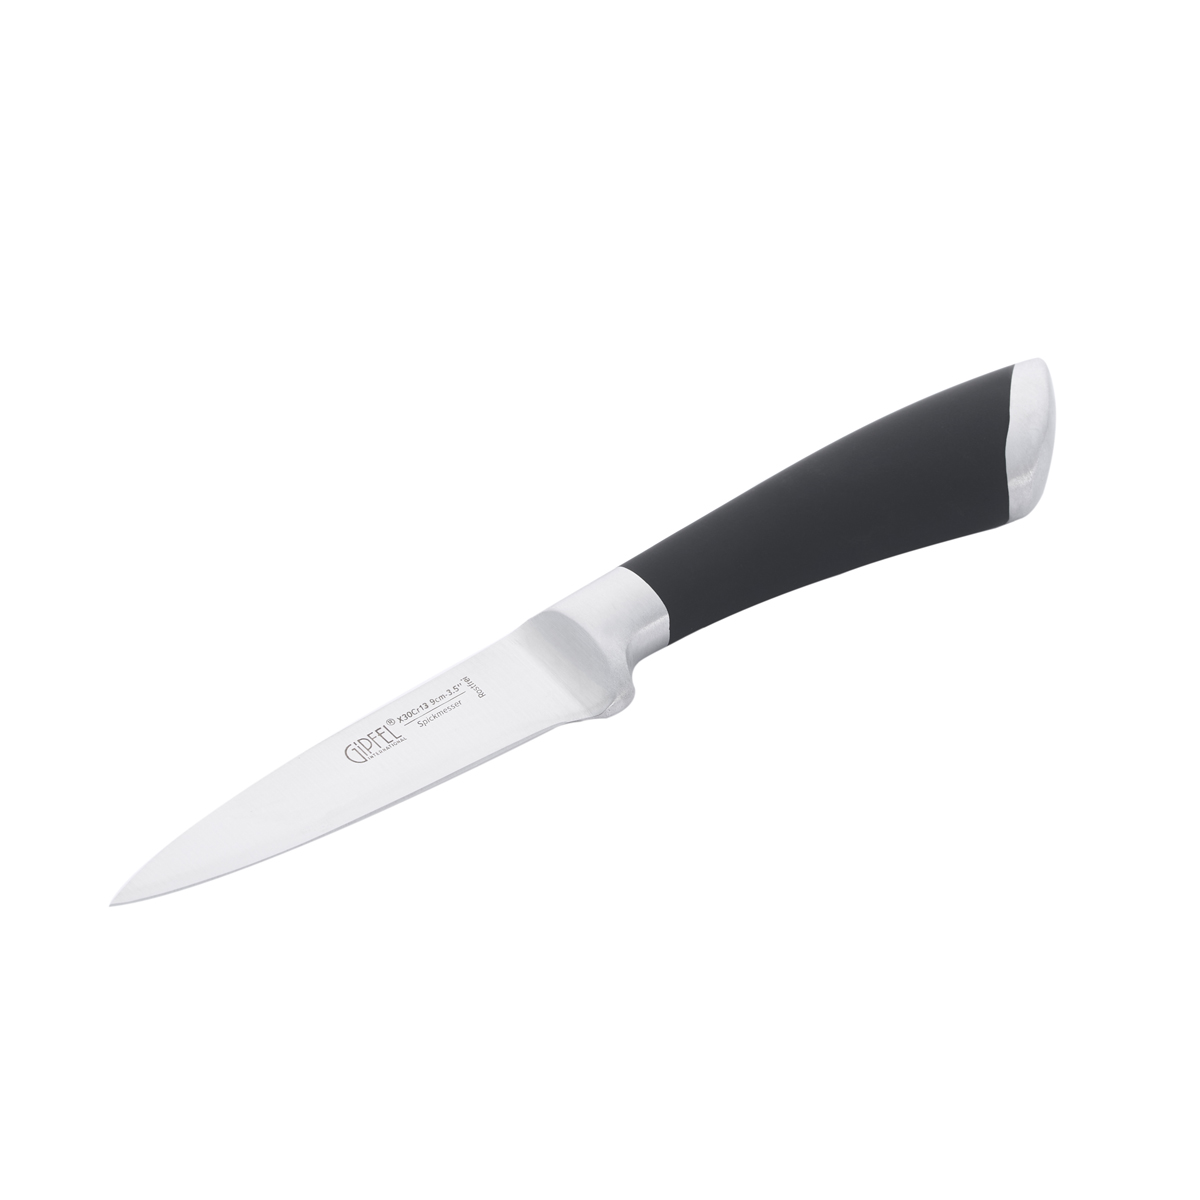 Нож для чистки овощей Gipfel Mirella 6840 9 см нож для чистки овощей gipfel sorti 52035 9 см